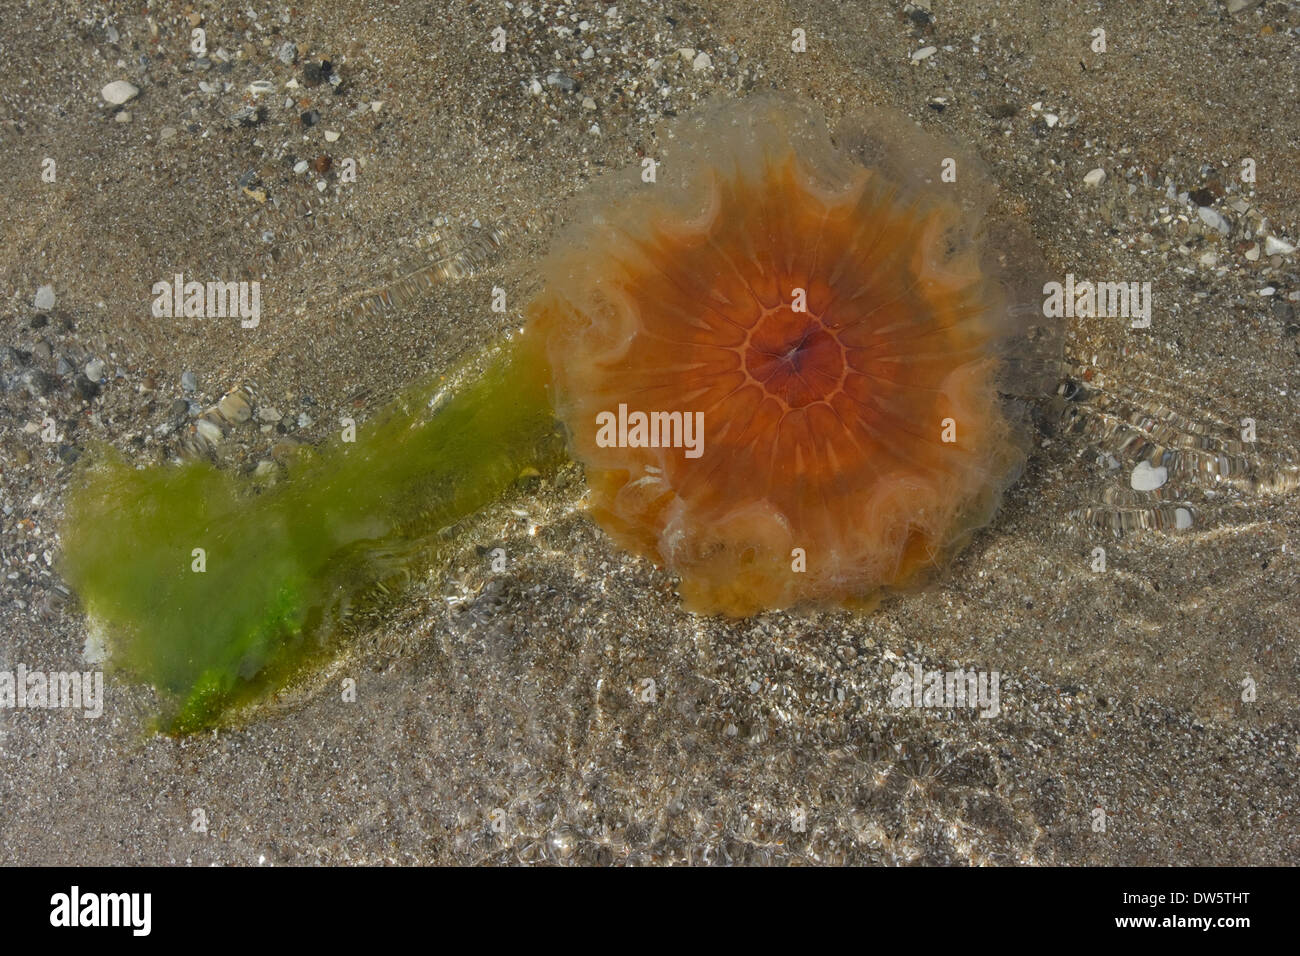 Ortie de mer (Cyanea capillata) sur la plage, le Kattegat Rørvig Nouvelle-Zélande Danemark Banque D'Images